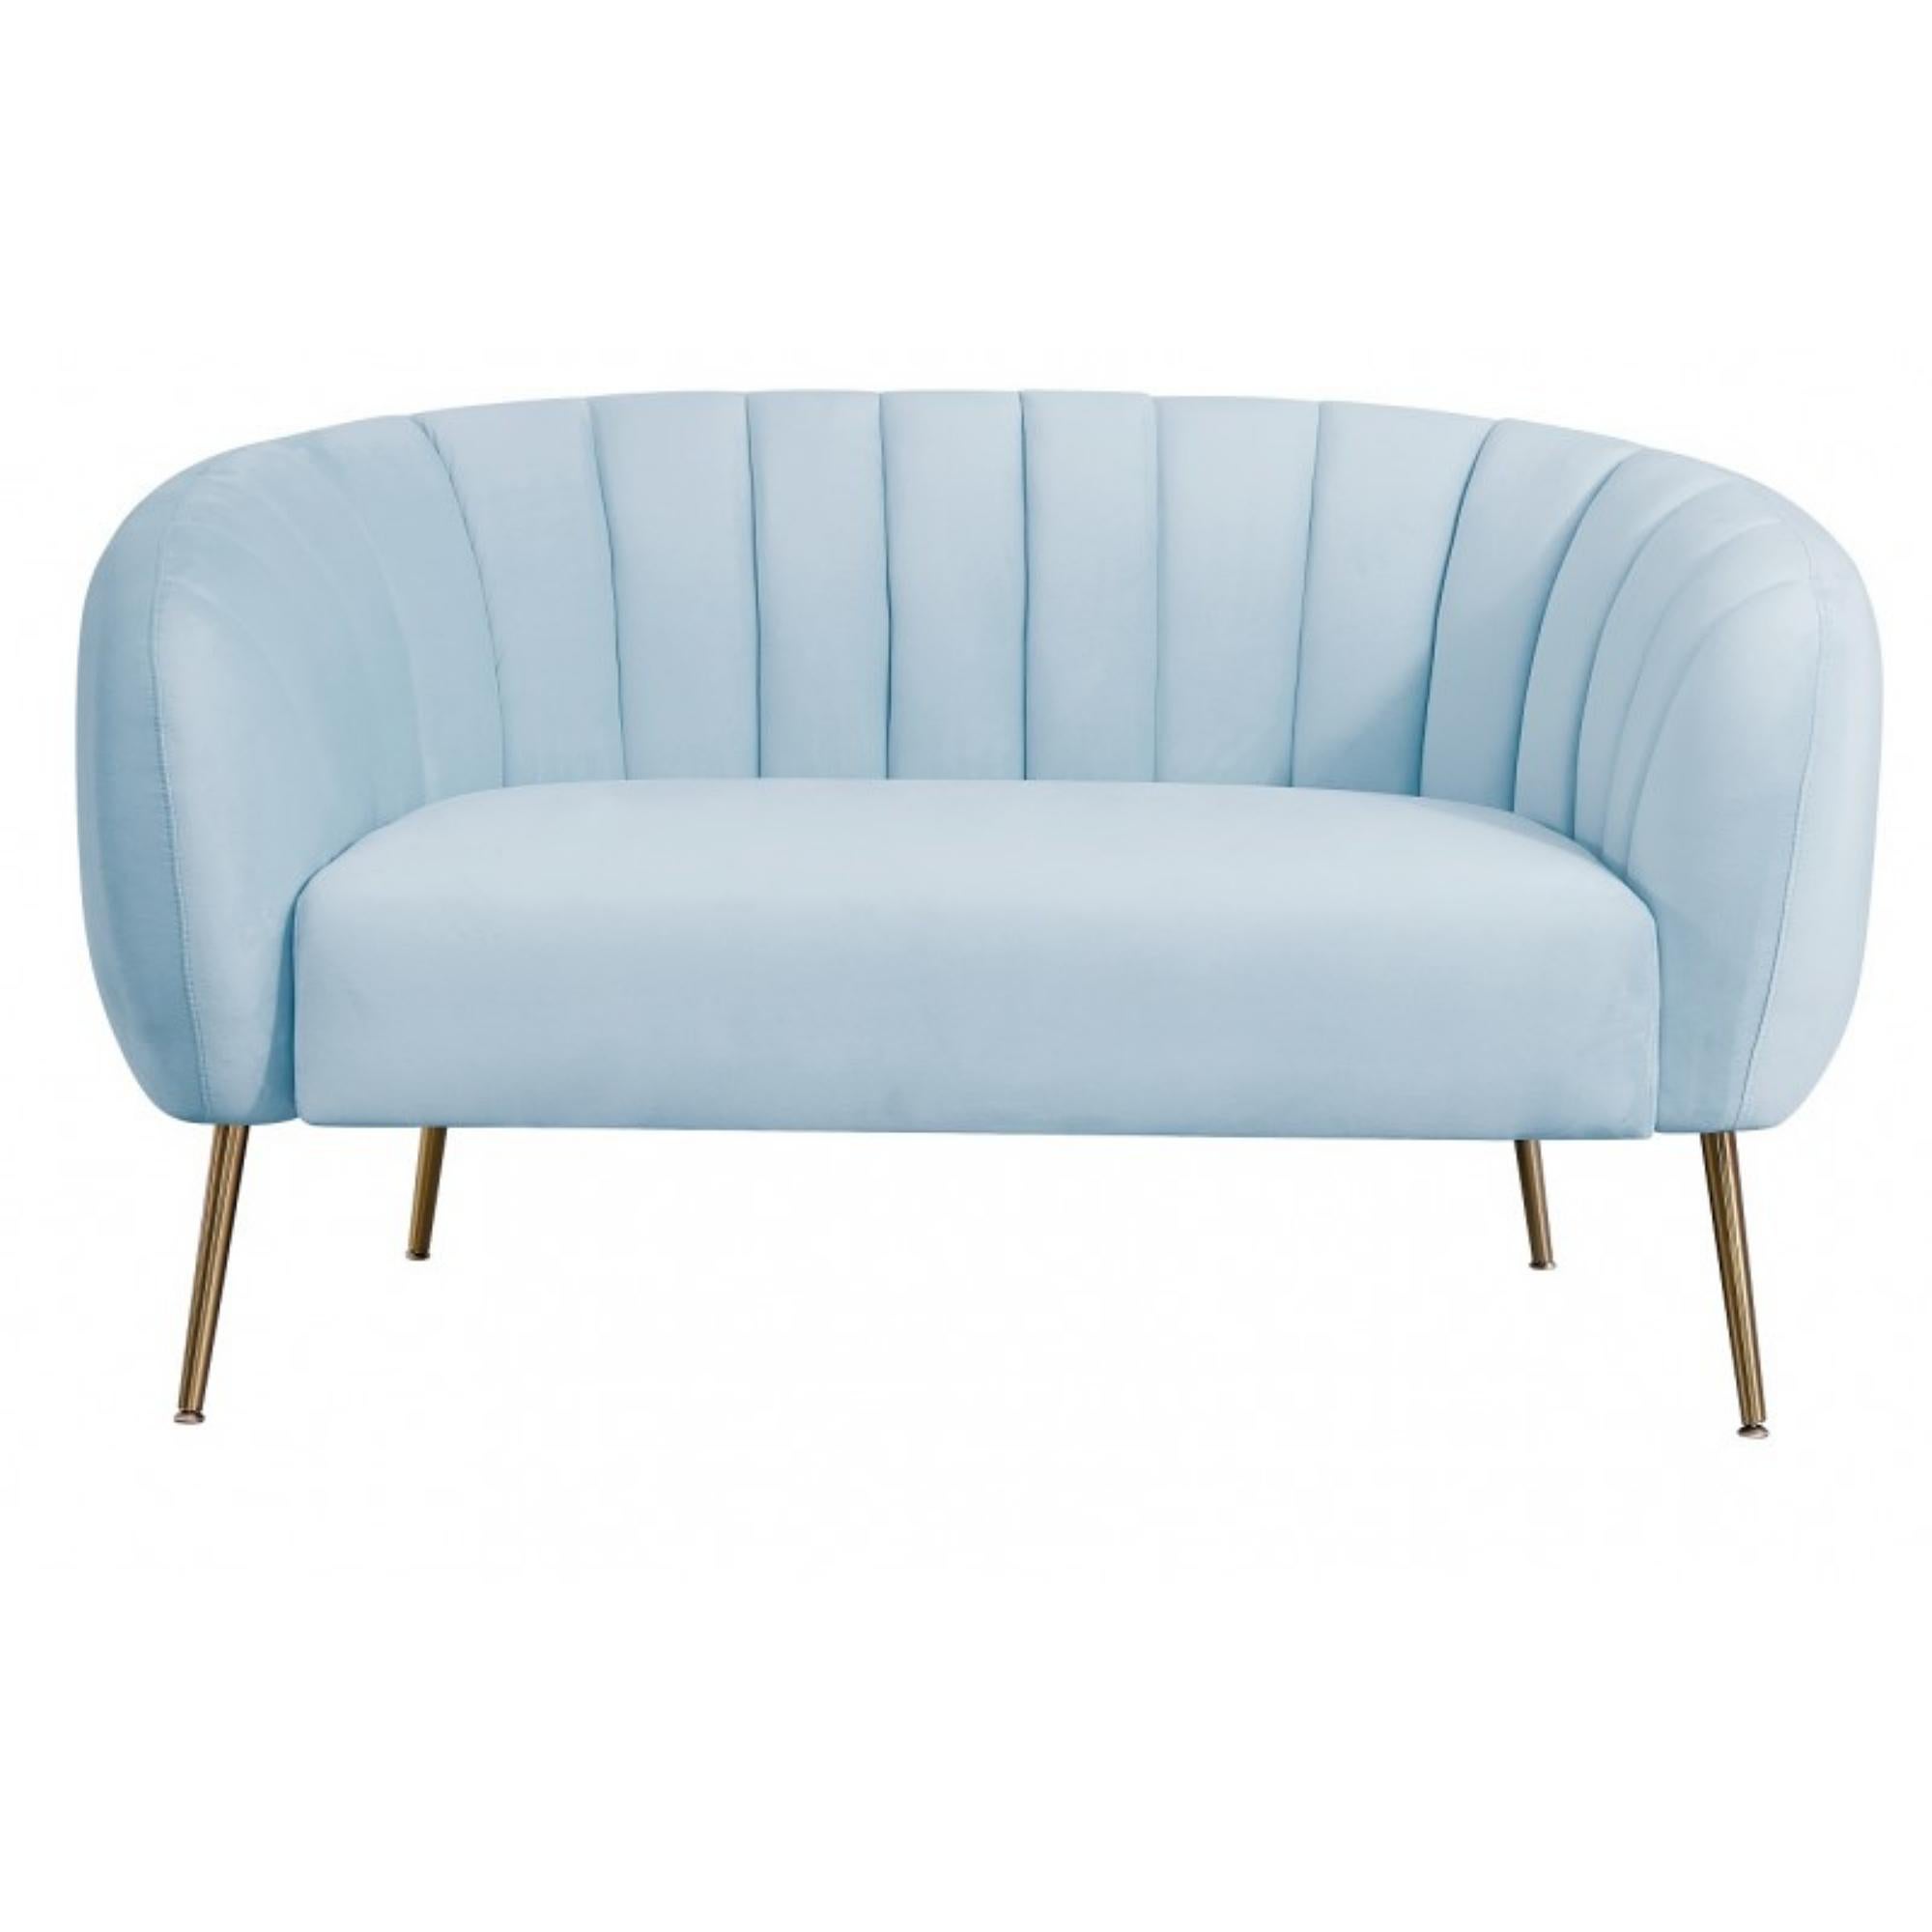 Modern Light Blue Velvet Upholstered 2 Seater Sofa New For Sale